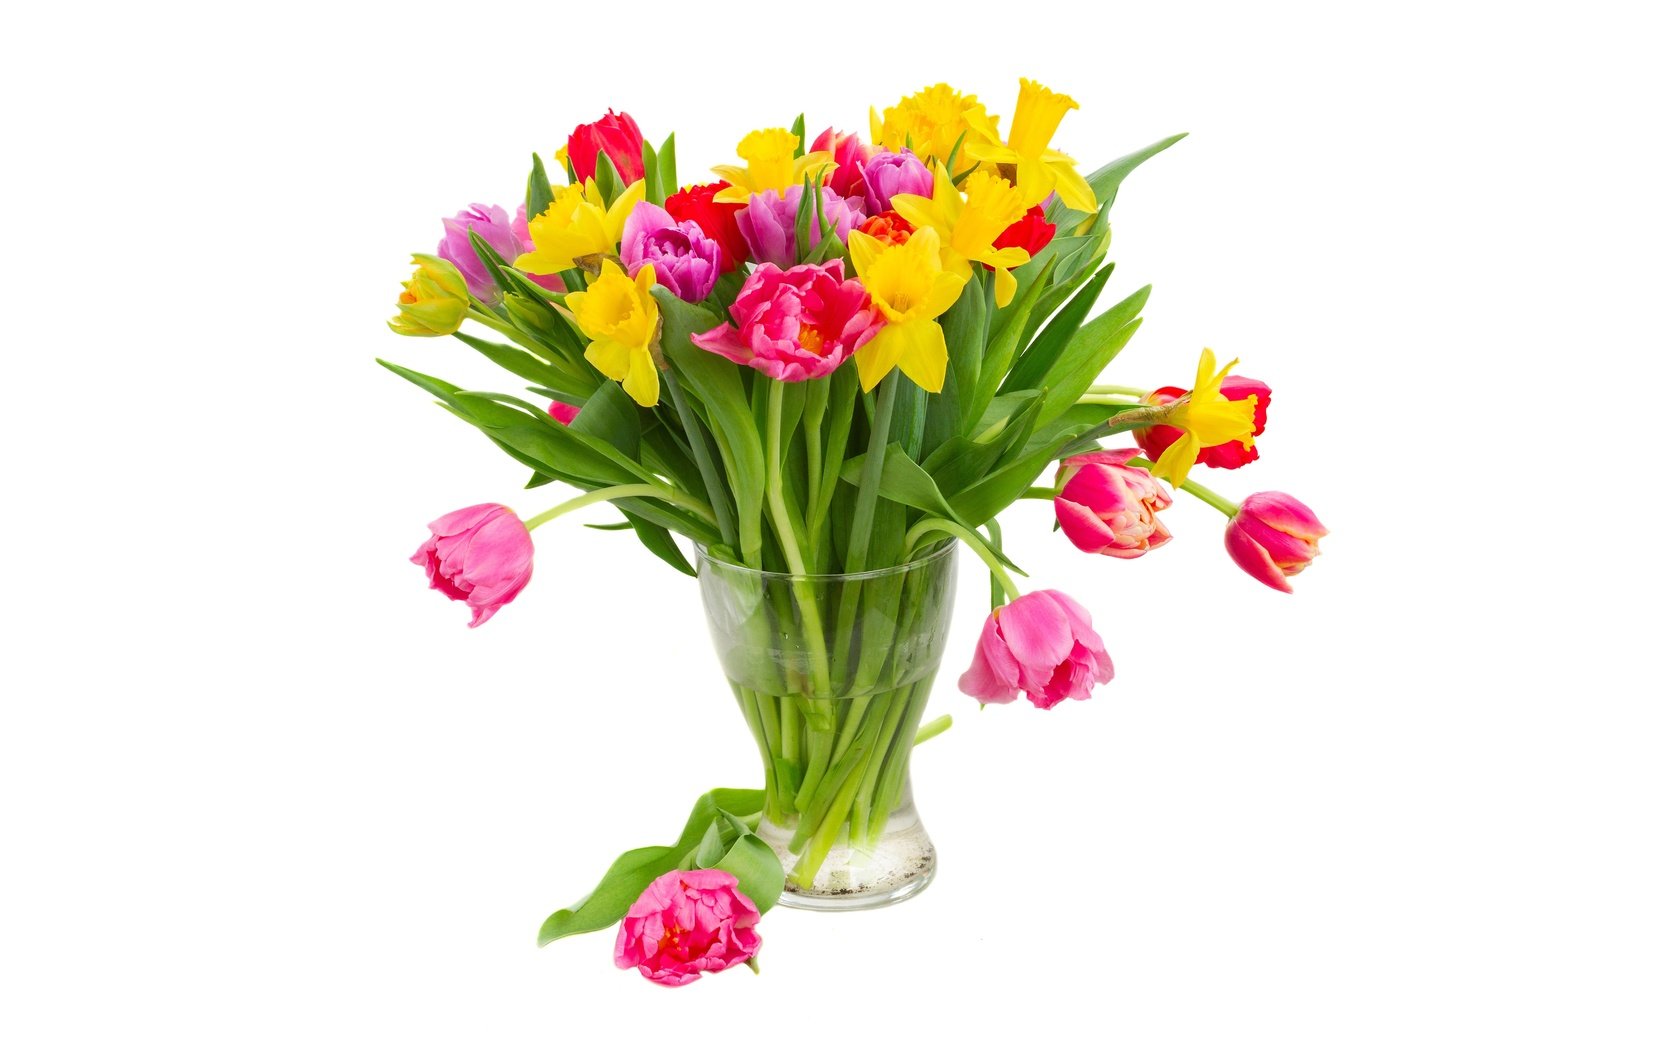 Обои цветы, нарциссы, вода, желтые, разноцветные, фиолетовые, красные, тюльпаны, розовые, белый фон, ваза, flowers, daffodils, water, yellow, colorful, purple, red, tulips, pink, white background, vase разрешение 6400x4000 Загрузить